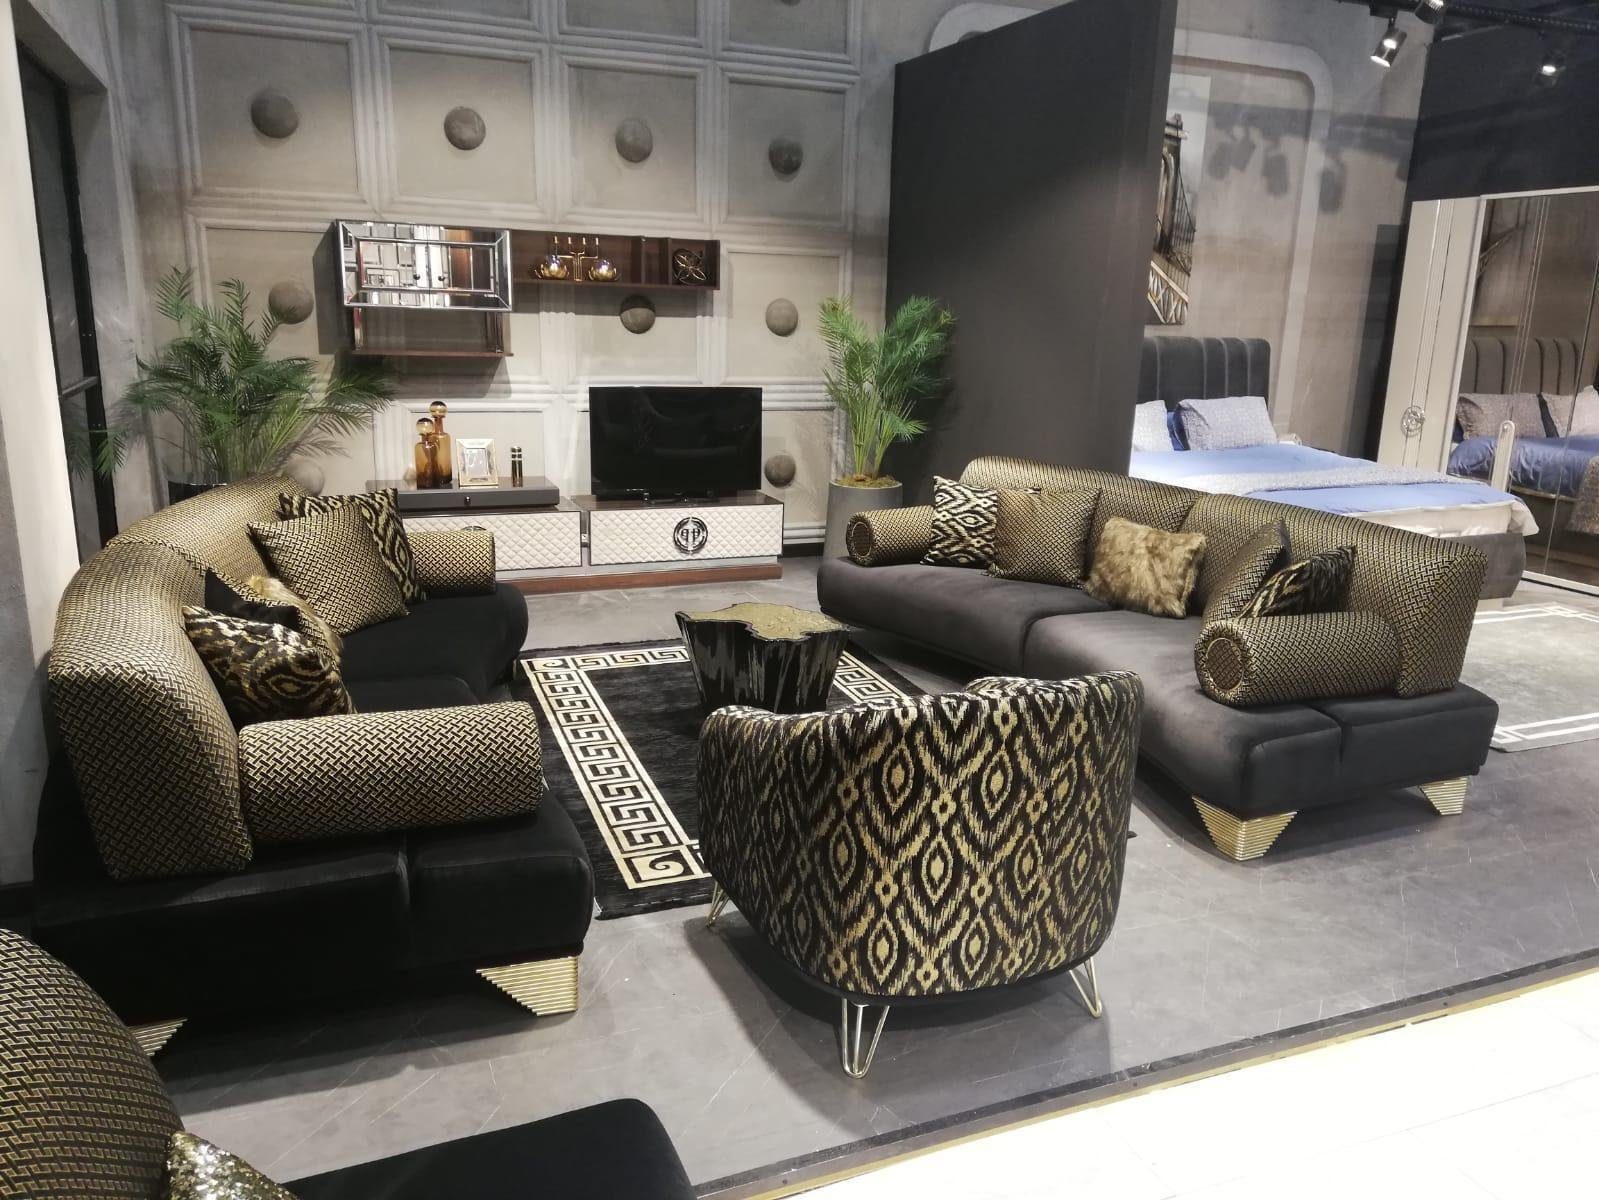 JVmoebel Sofa Made Dreisitzer Sofas Wohnzimmer in Couch Stoff Luxus 260cm, Sofa Europe